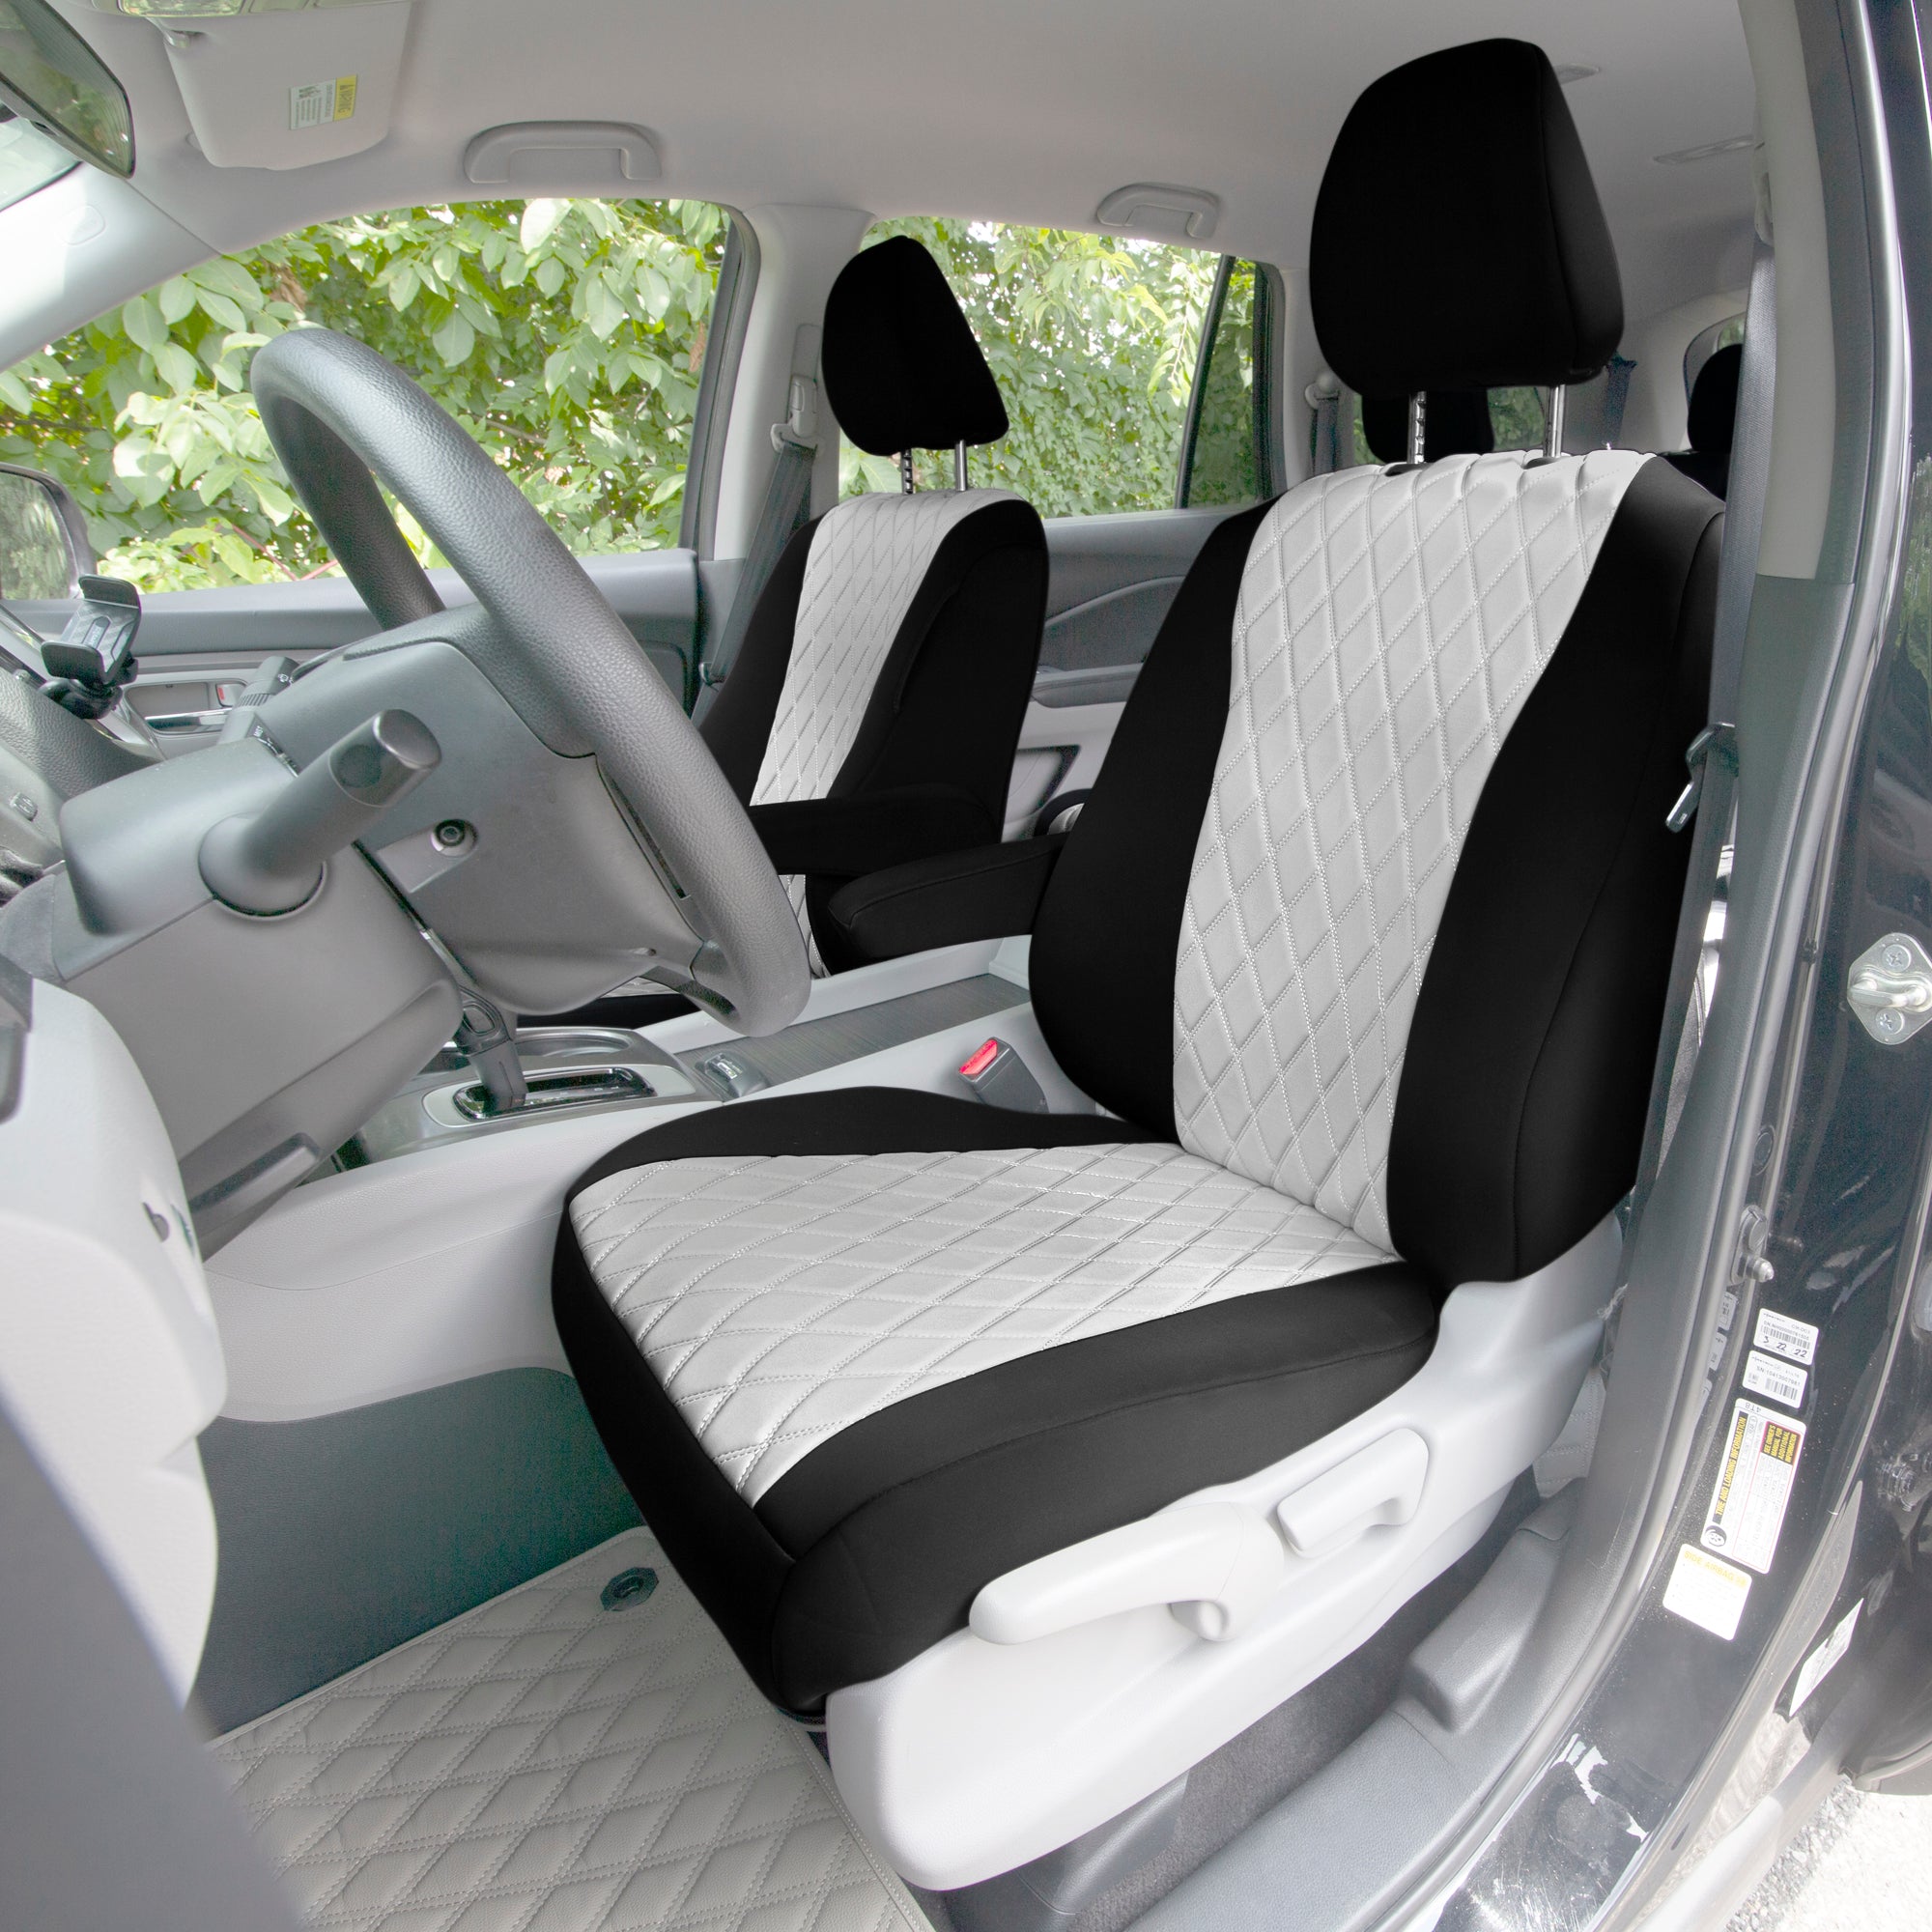 Honda Pilot 2016 - 2022 - Full Set Seat Covers - Gray Ultraflex Neoprene